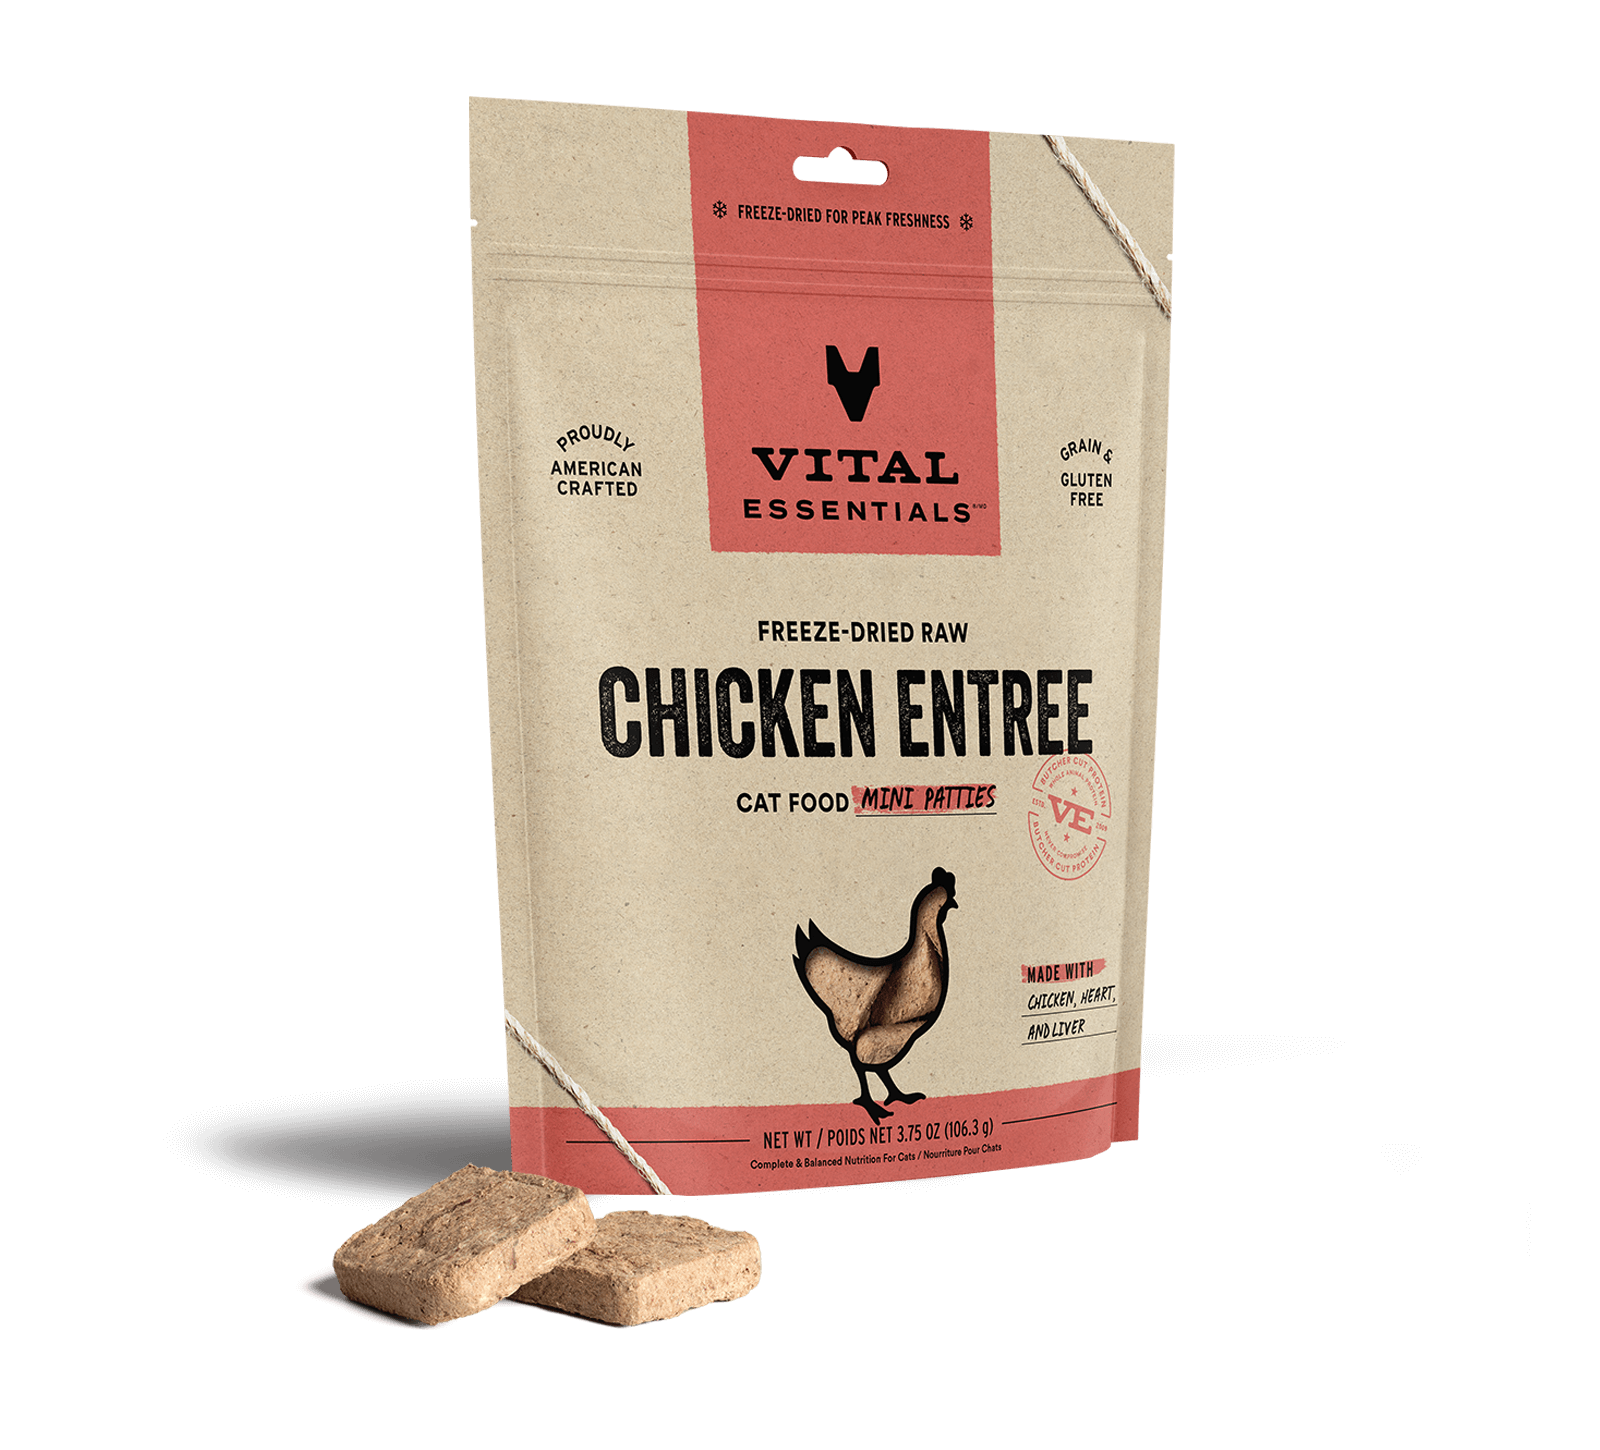 Vital Essentials Freeze-Dried Raw Chicken Entree Cat Food Mini Patties, 3.75 oz - Food